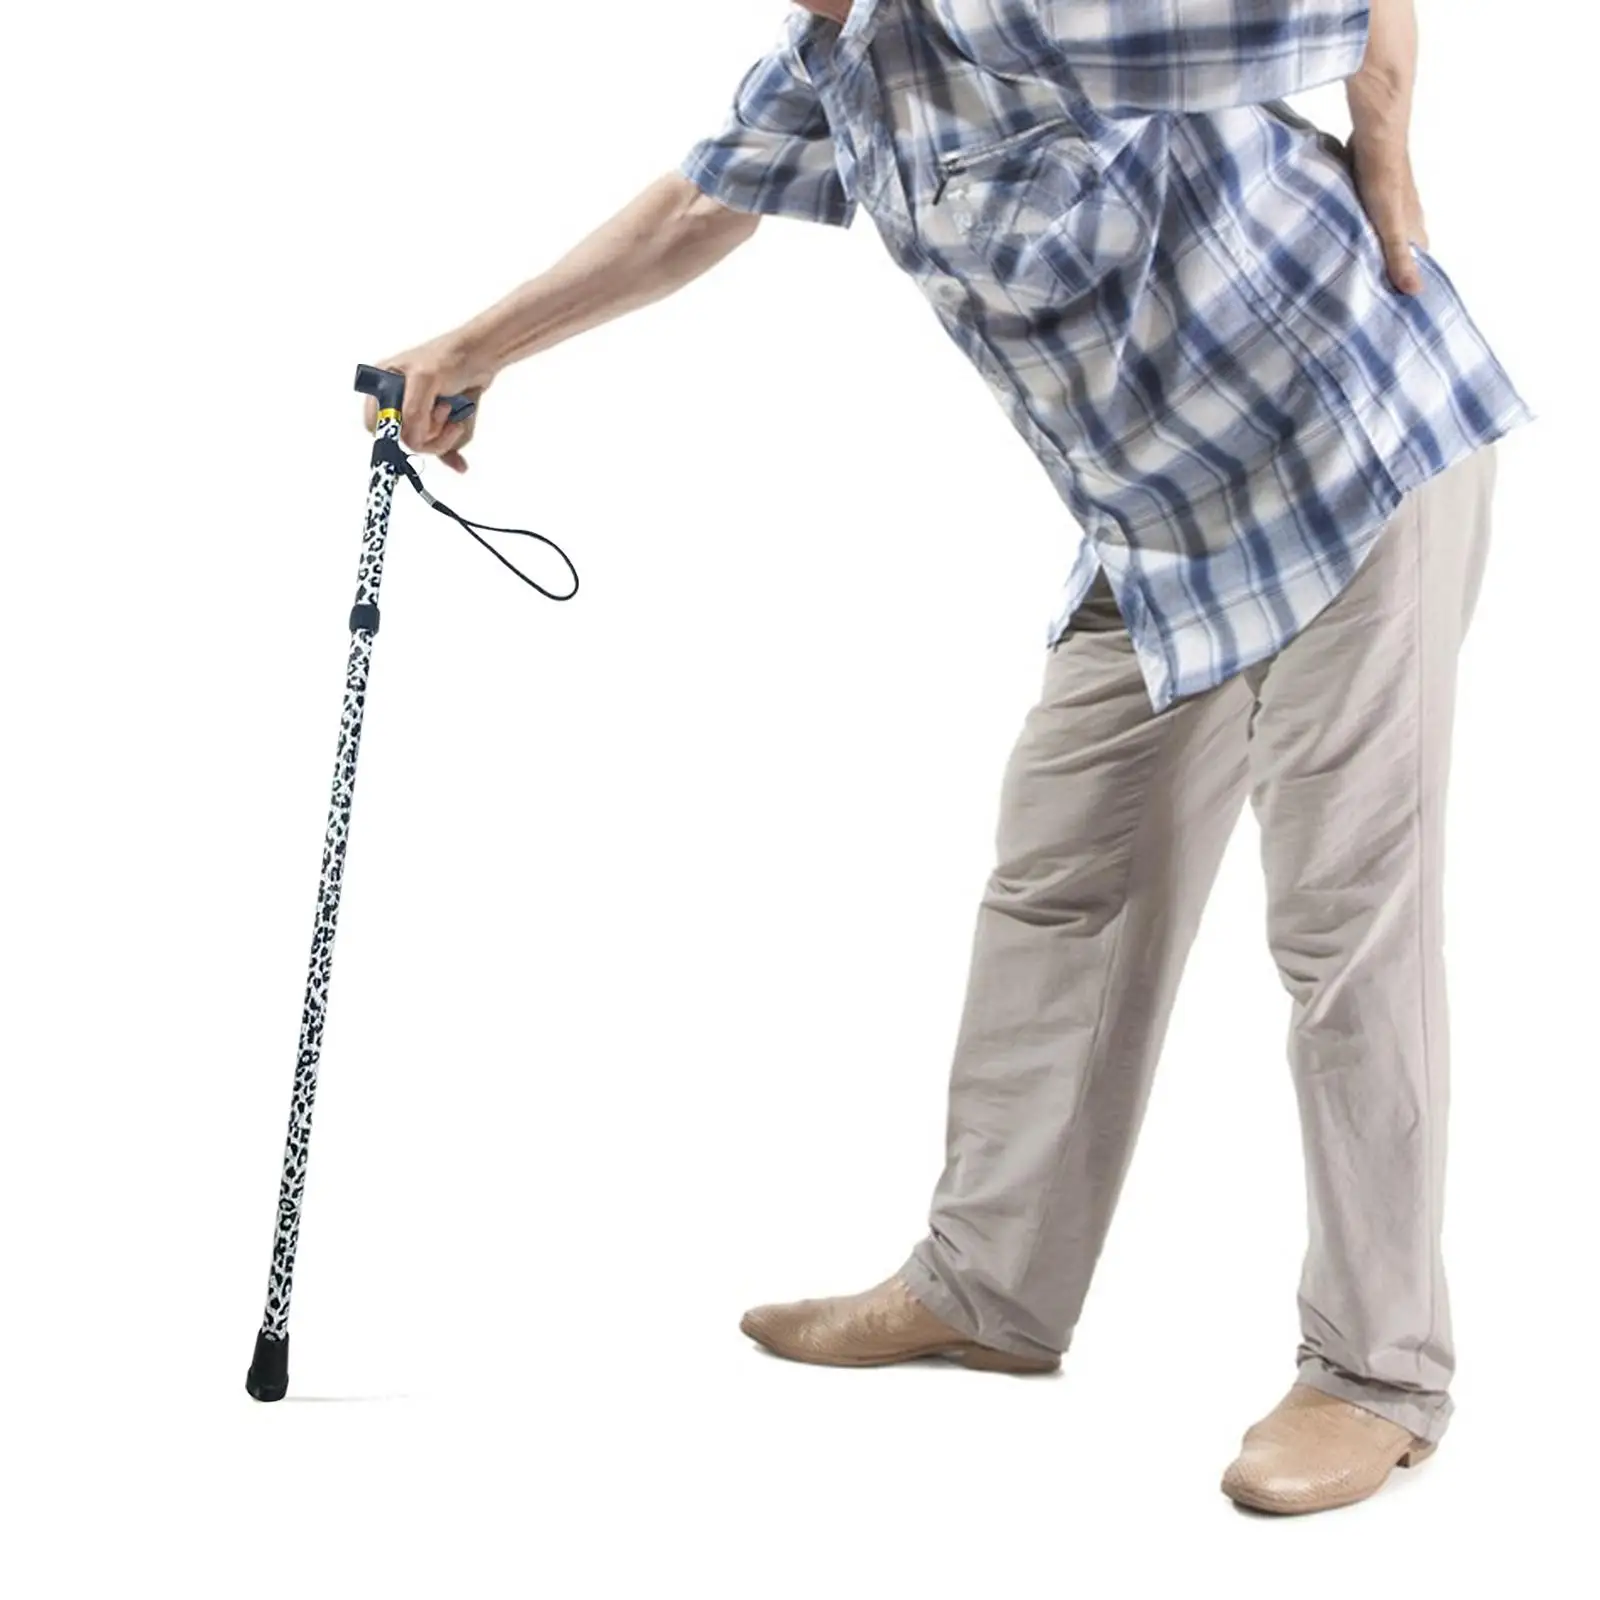 Trekking Poles Foldable Adjustable Shock Absorbing Metal Cane Walking Sticks for Elderly Old Man Mountaining Backpacking Walking